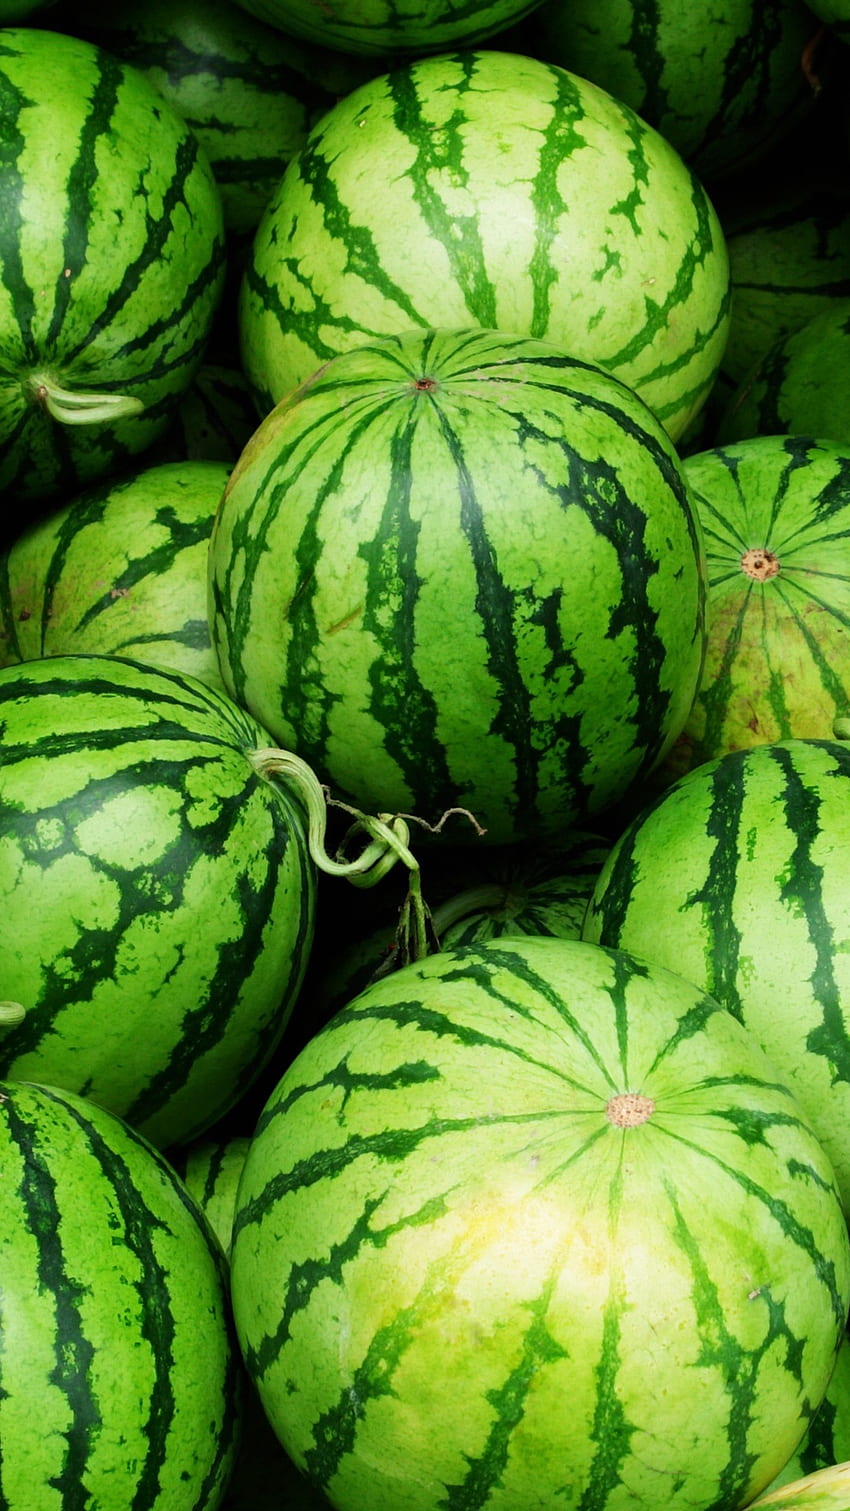 Watermelon là một trong những trái cây phổ biến và thơm ngon nhất trong thời tiết mùa hè. Hãy thưởng thức những bức ảnh tuyệt đẹp về trái cây này được chụp từ góc độ đầy nghệ thuật để đem lại sự tươi mới và mát lạnh trong không gian sống của bạn. 